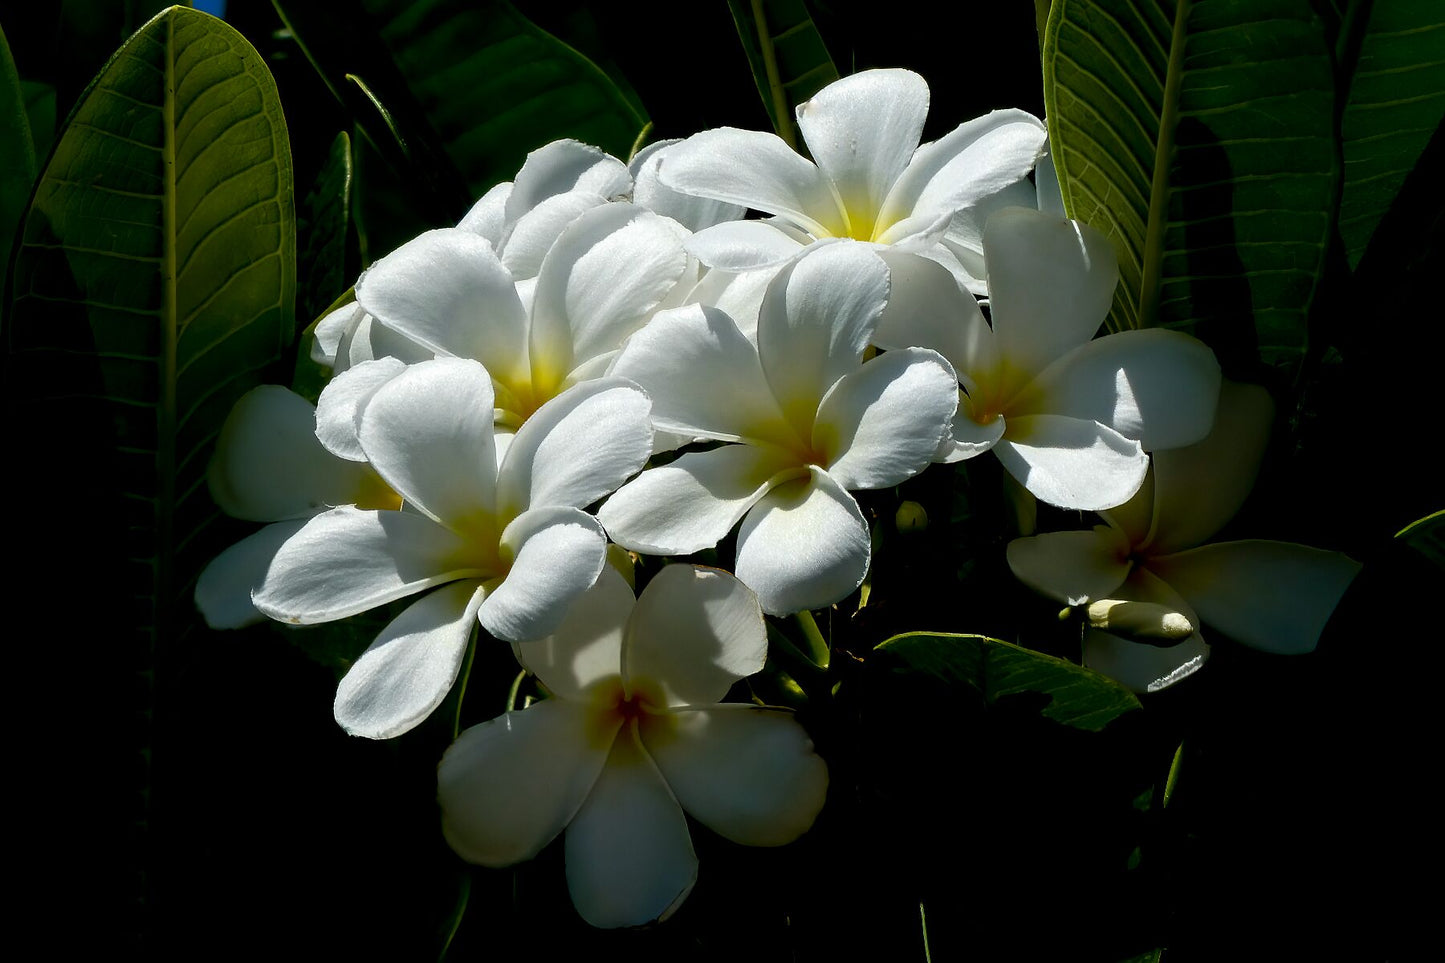 White Plumerias in sunlight